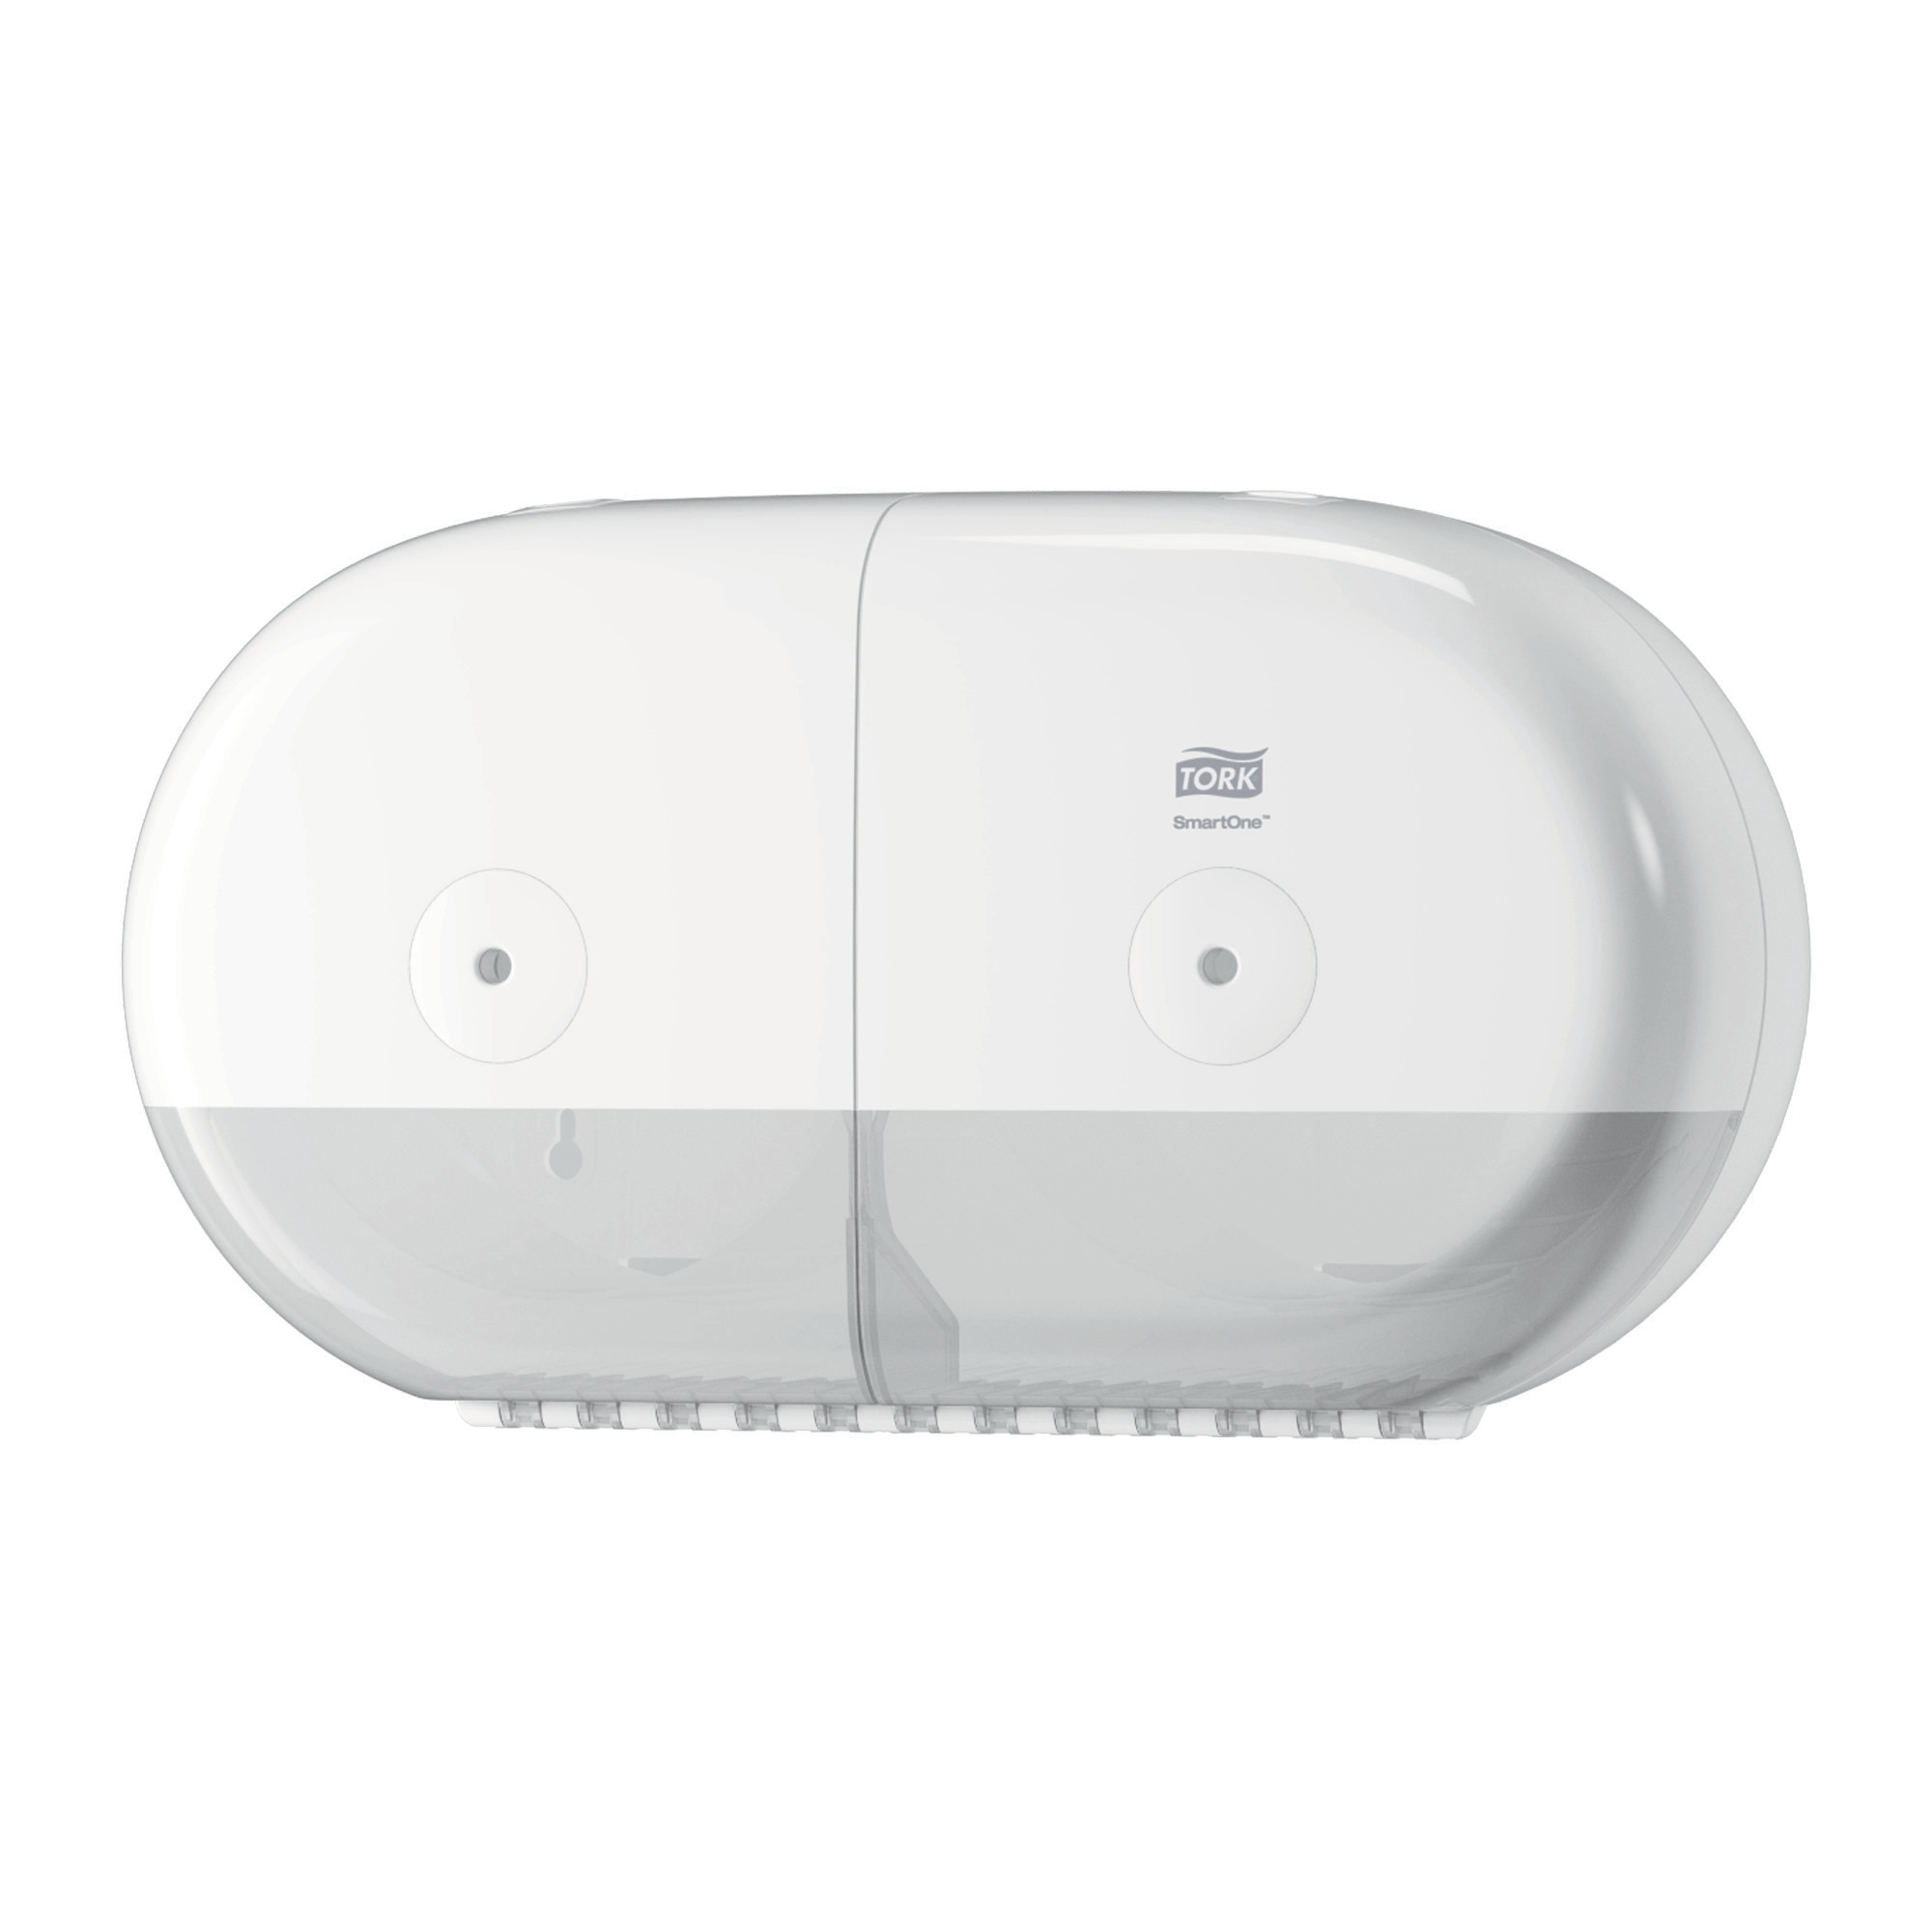 SmartOne Twin Mini T9 Toilettenpapierspender